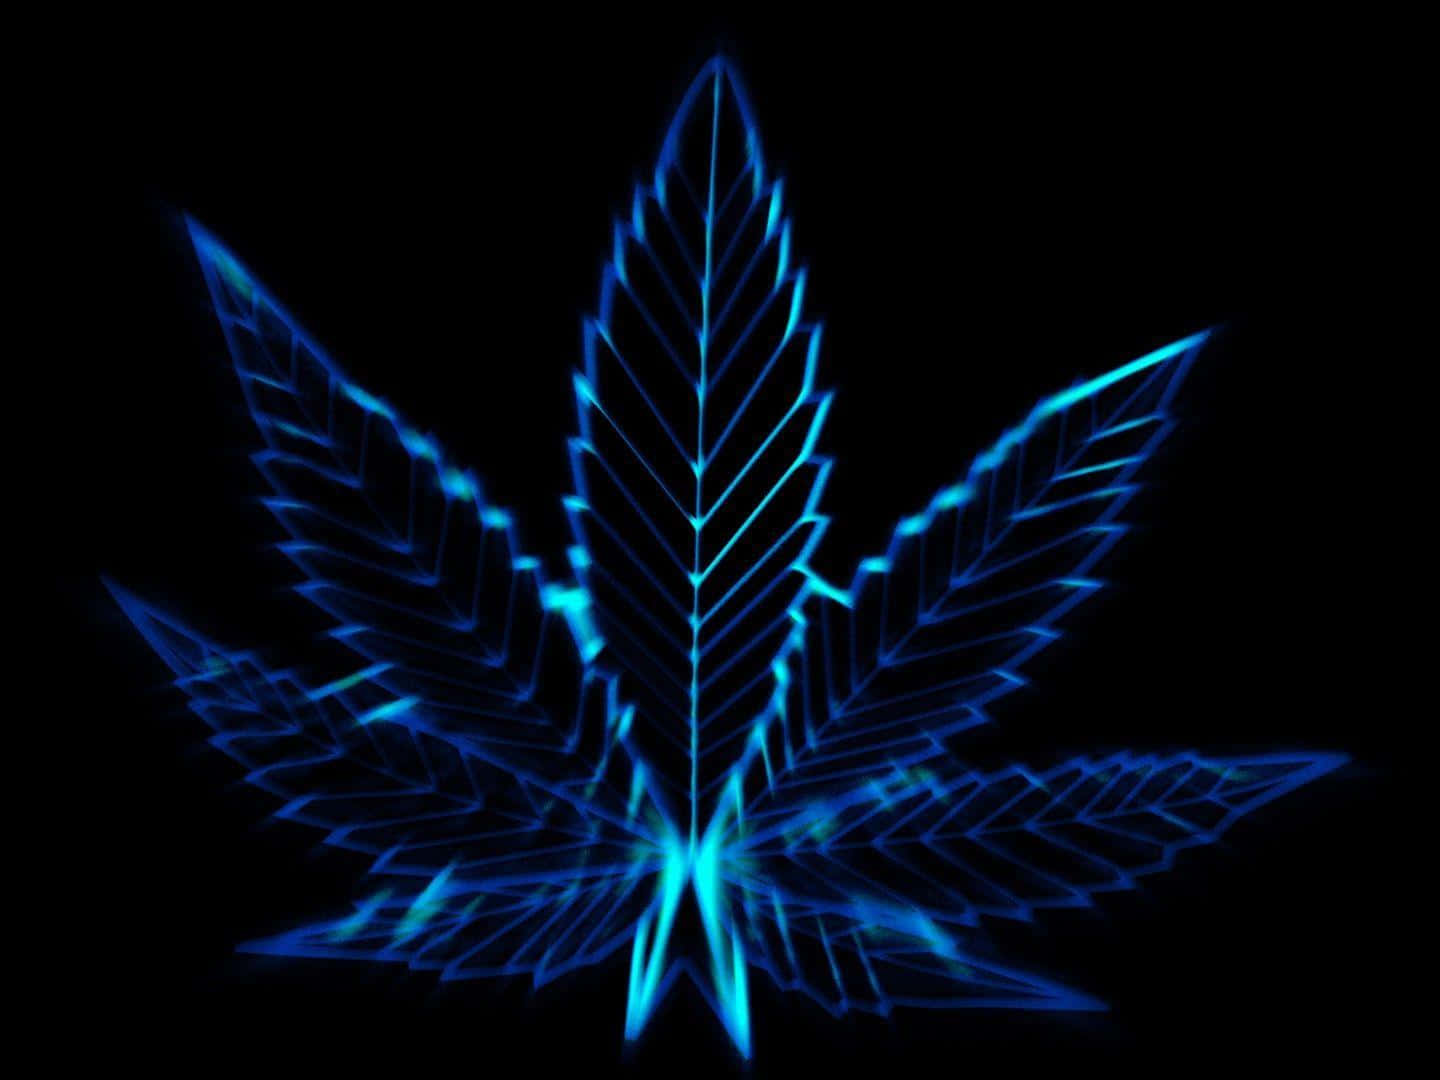 a blue marijuana leaf on a black background